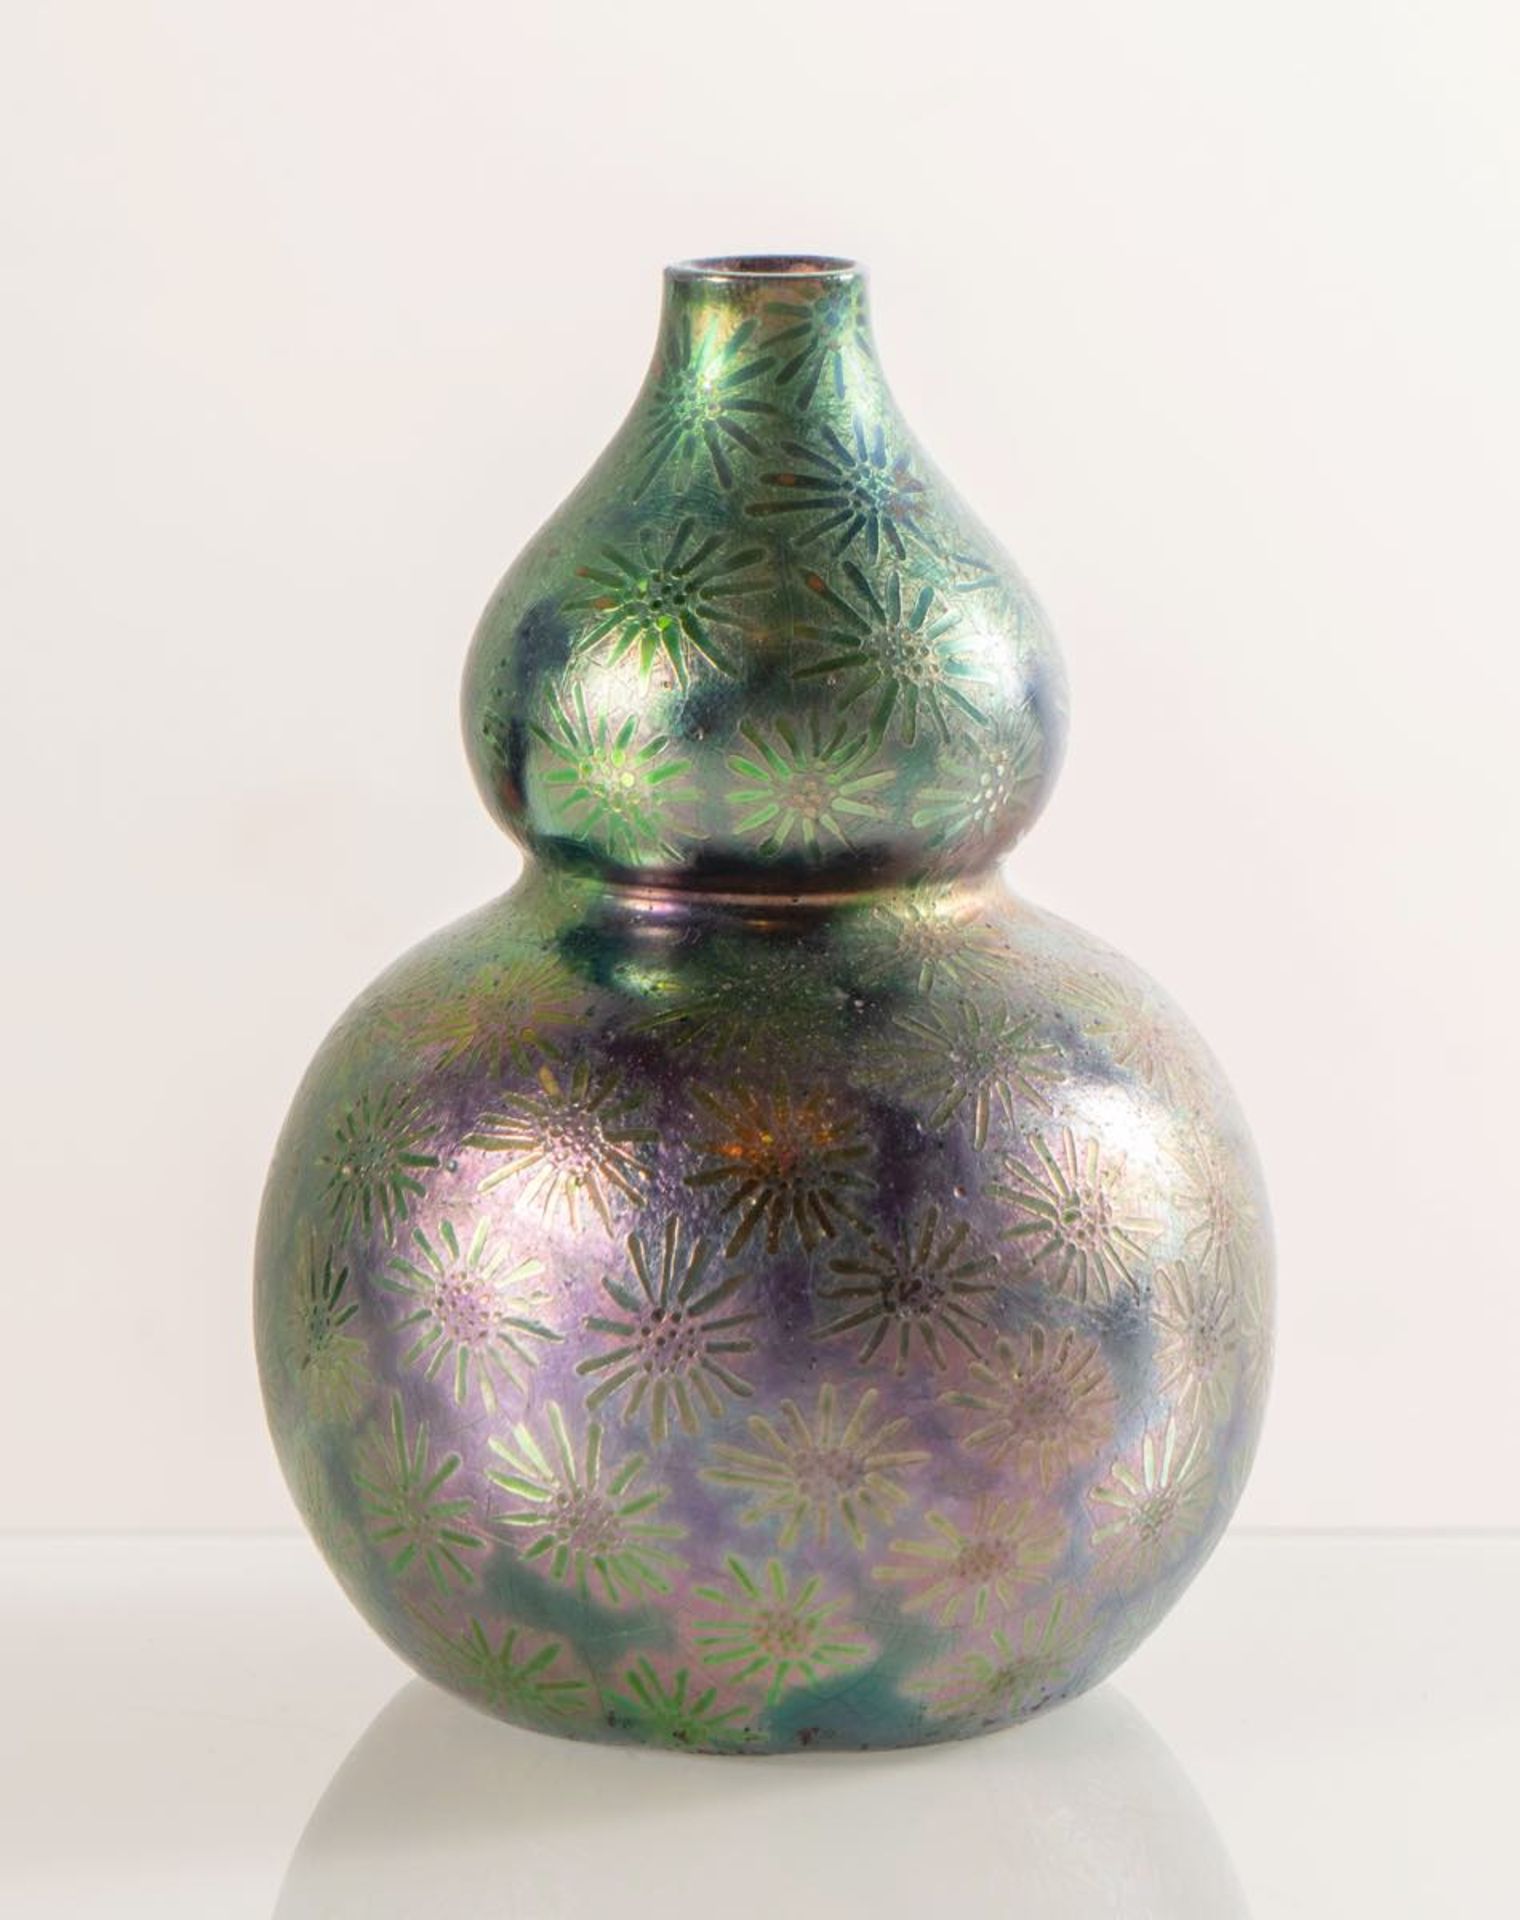 Clément Massier, Piccolo vaso in ceramica a forma di zucca, 1890 - 1910.Superficie interamente